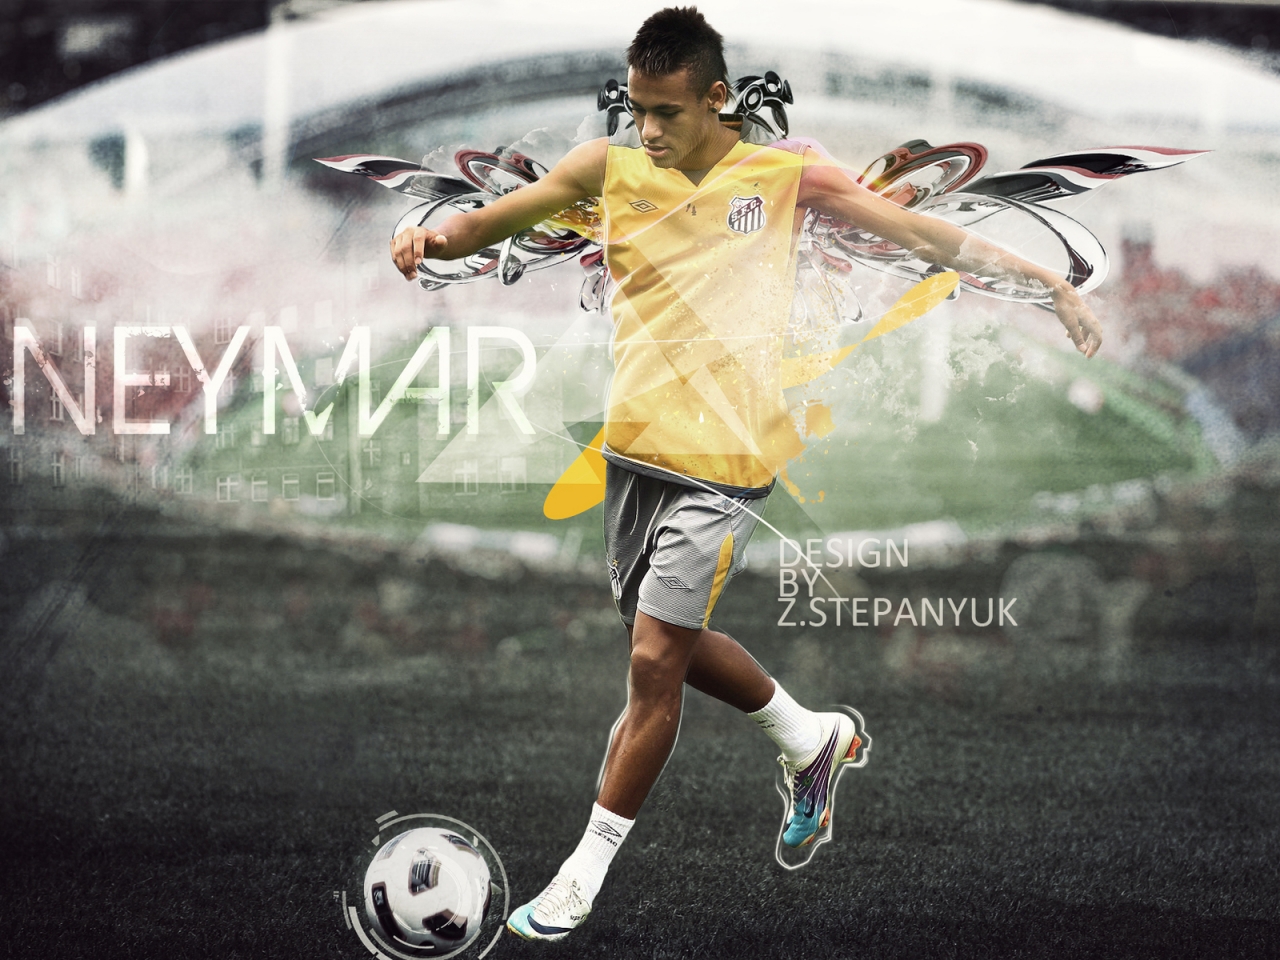 Neymar da Silva Santos for 1280 x 960 resolution